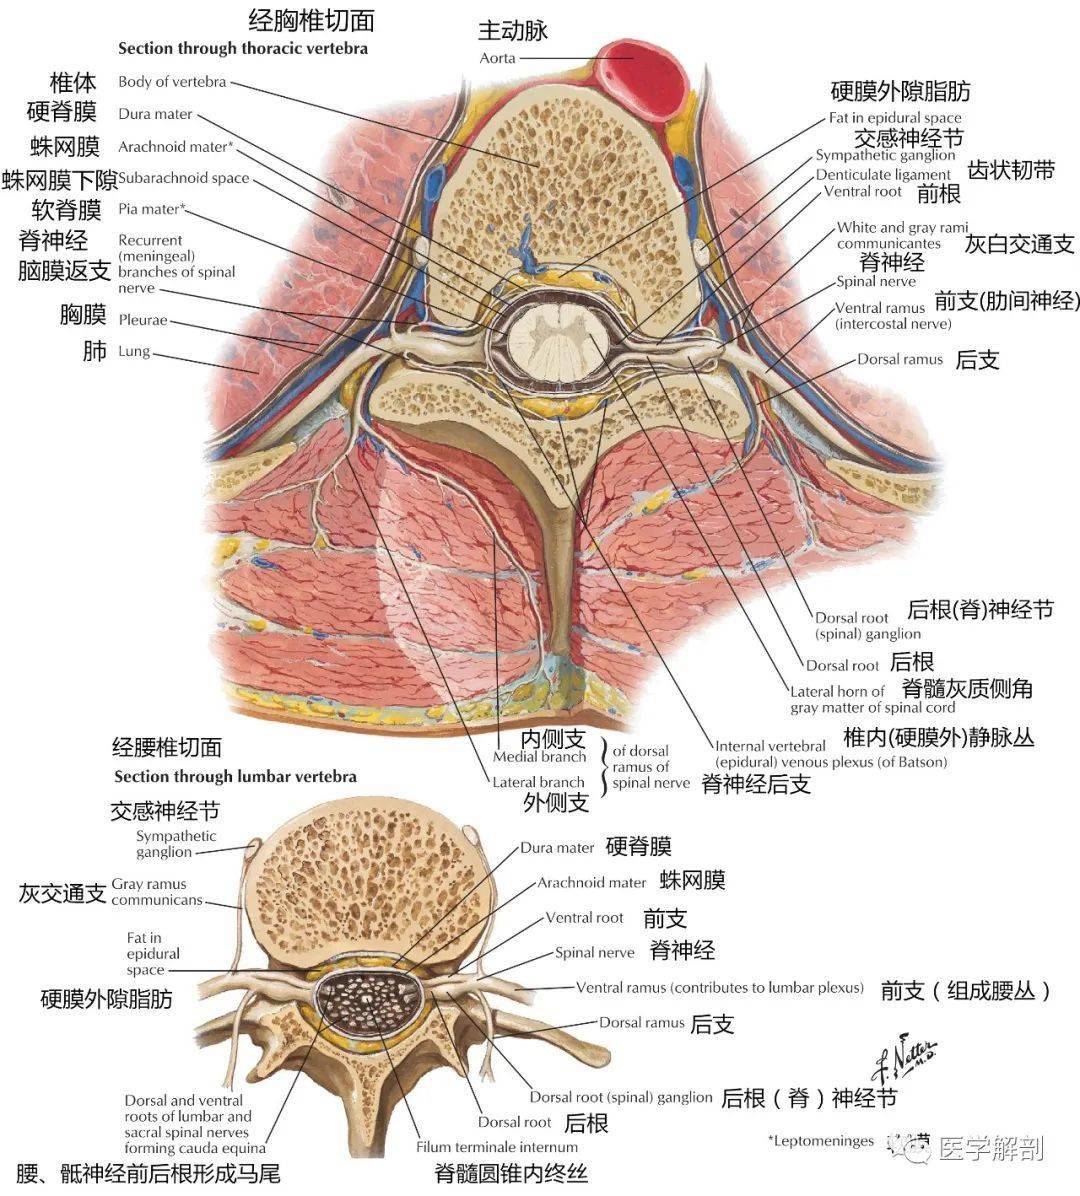 高清解剖图谱 | 脊神经详细解剖